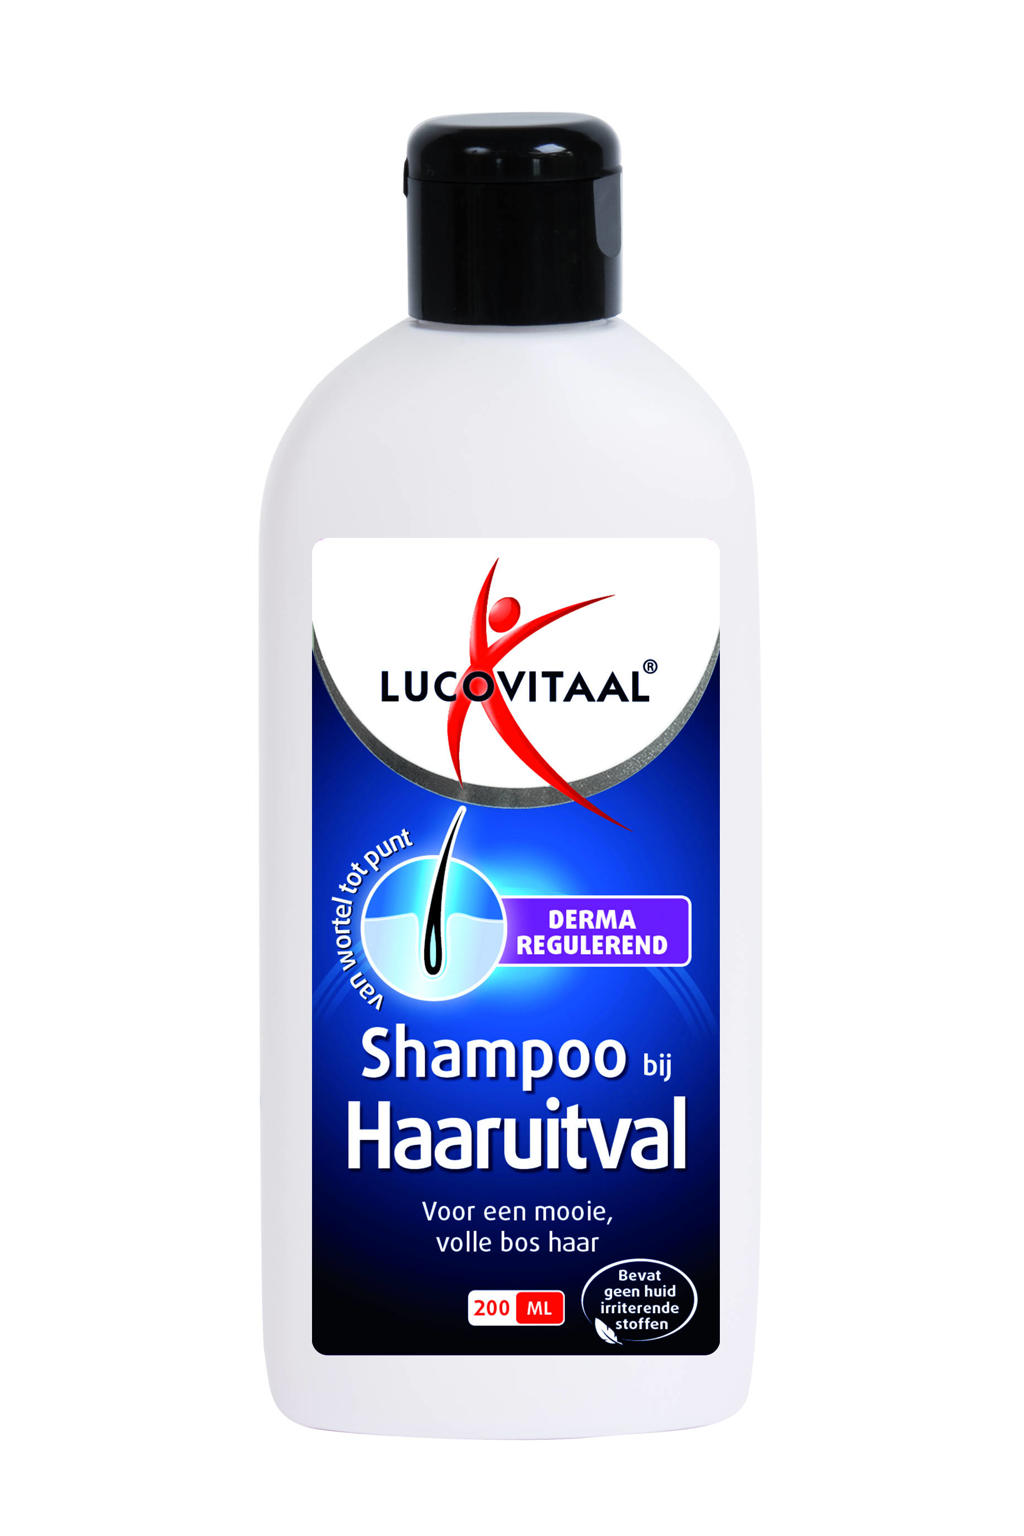 Lucovitaal Bij Haaruitval shampoo - 200 ml